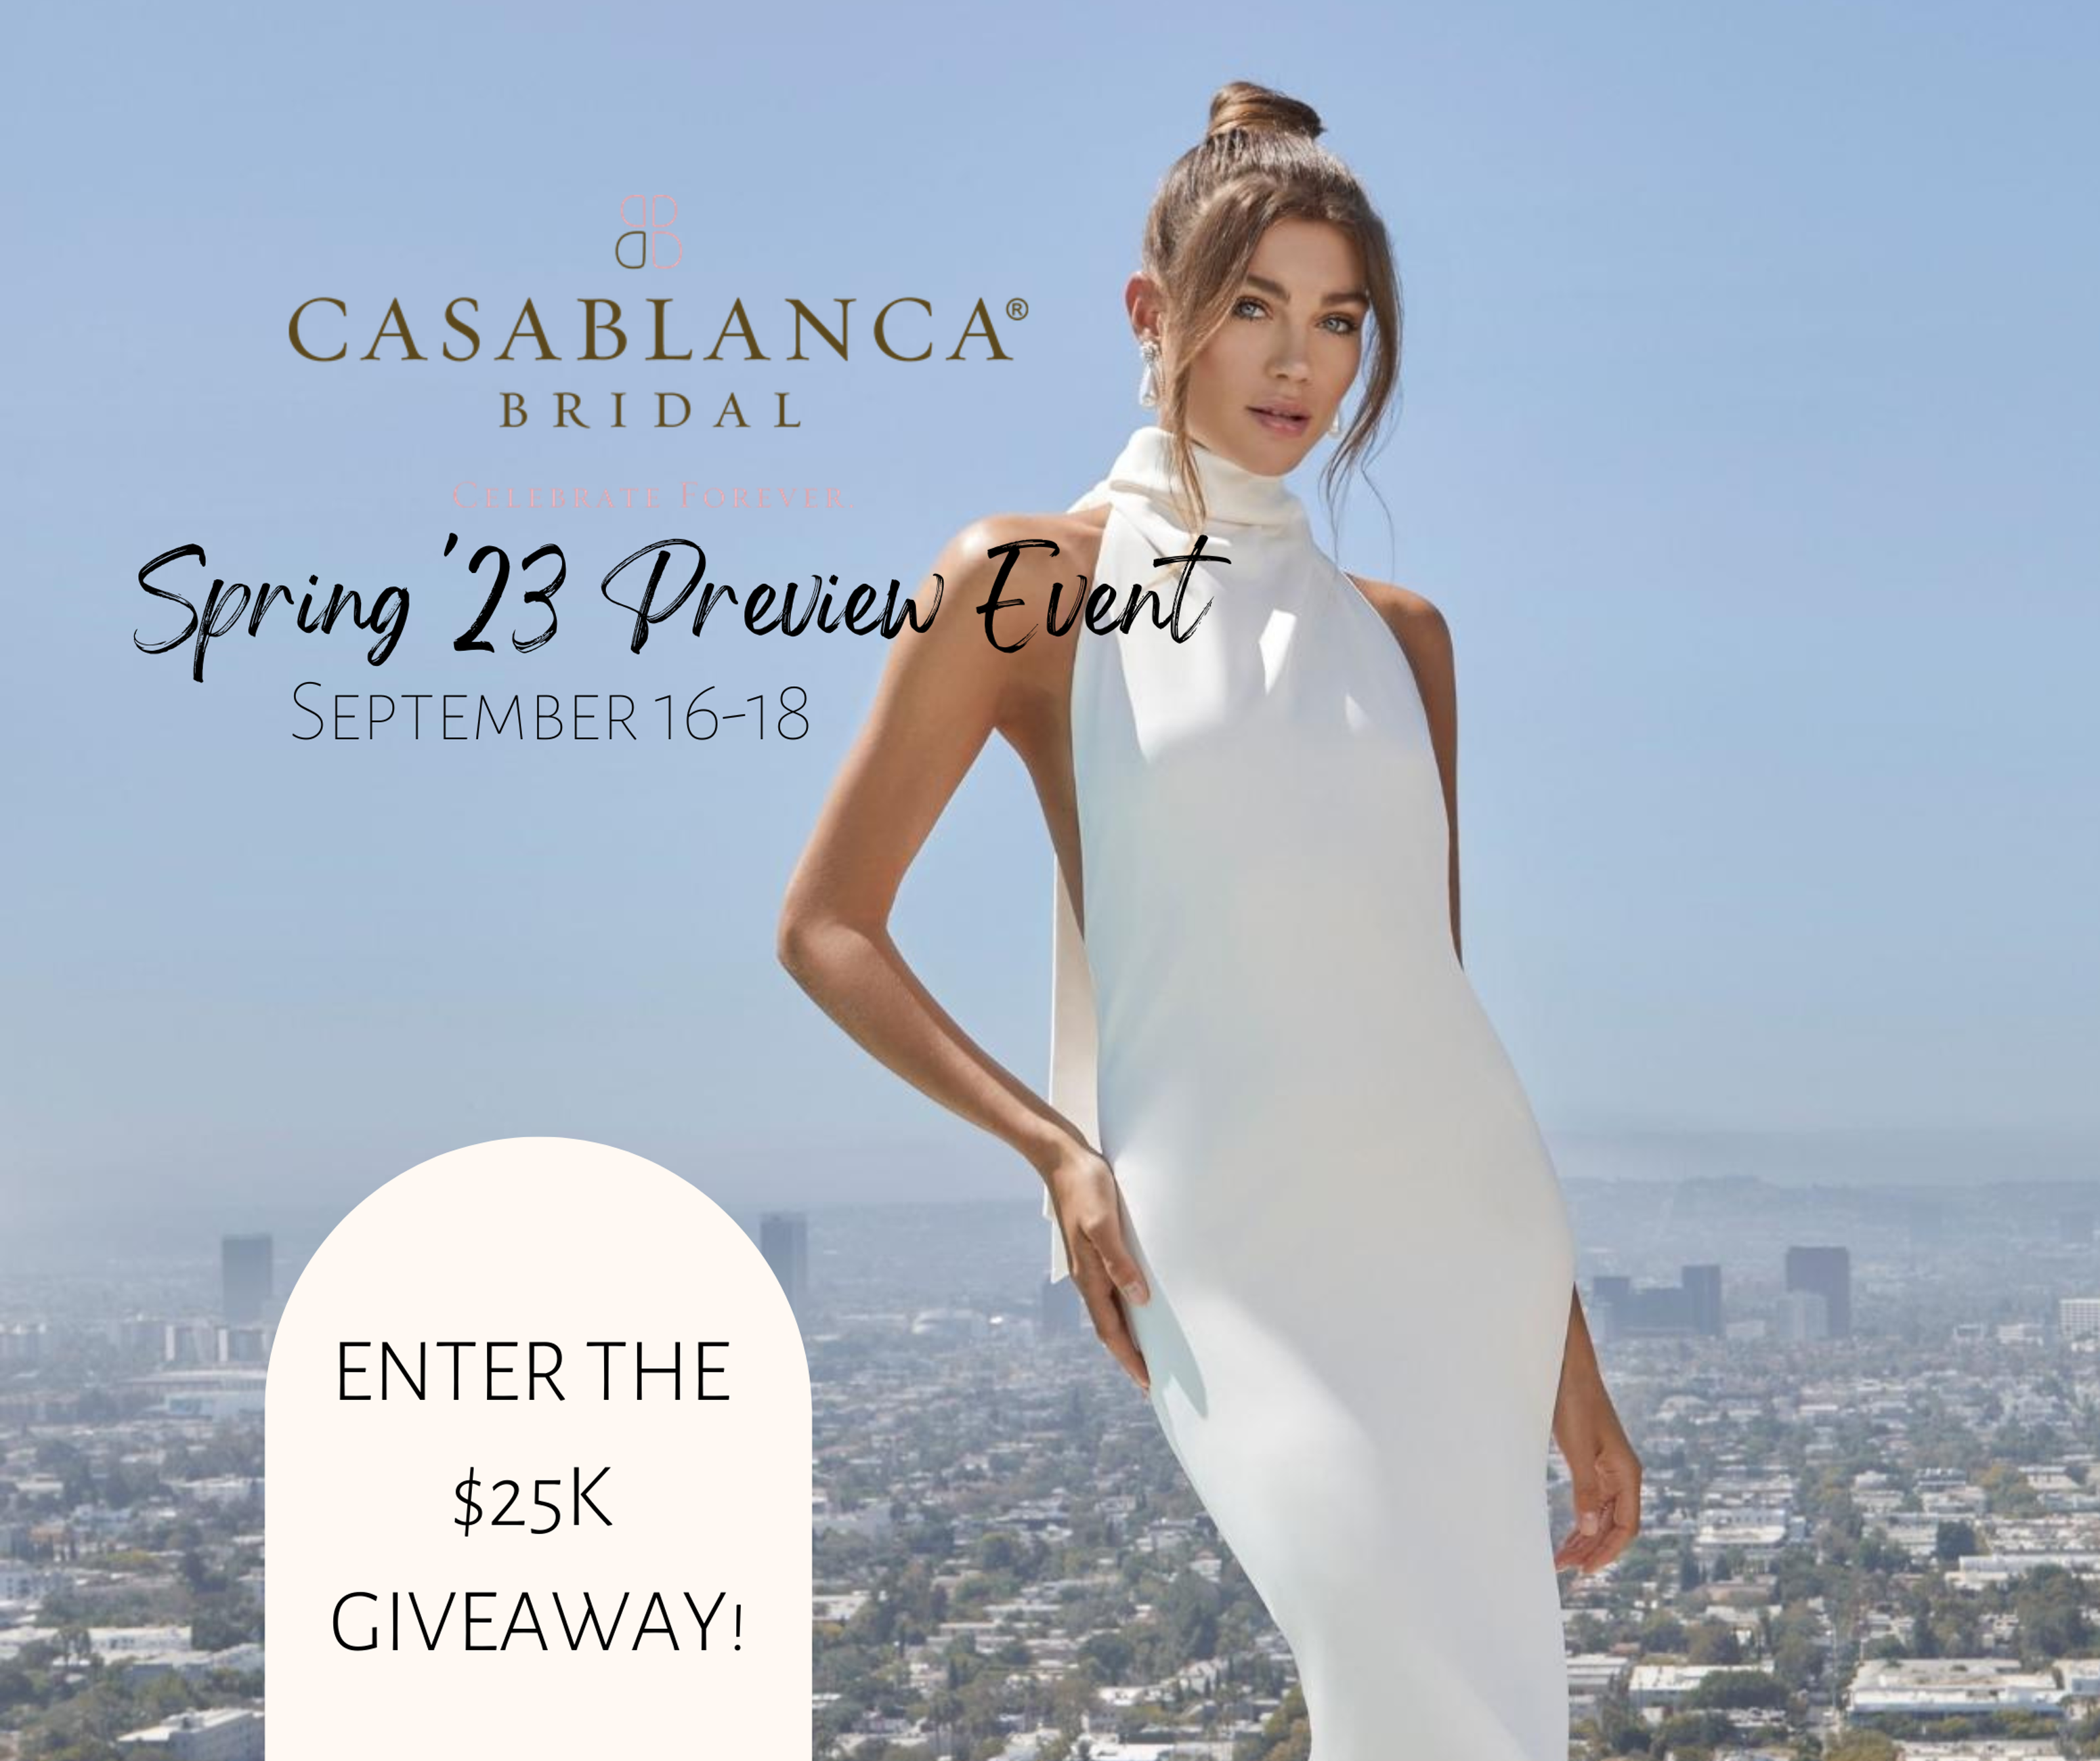 Casablanca Bridal Spring Collection Preview